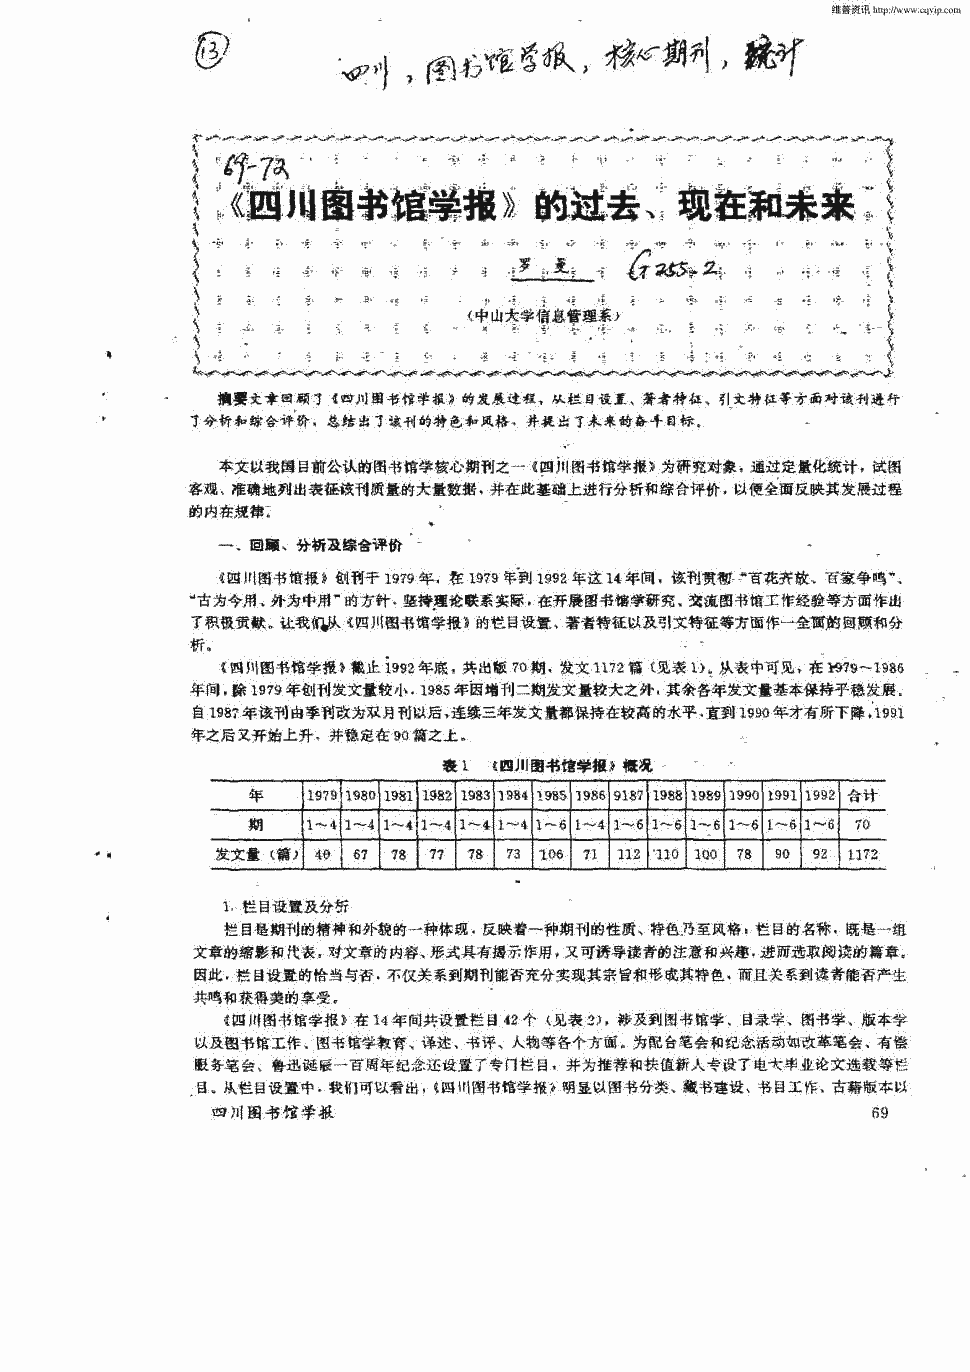 《四川图书馆学报》1994年第1期 69-72,共4页罗曼